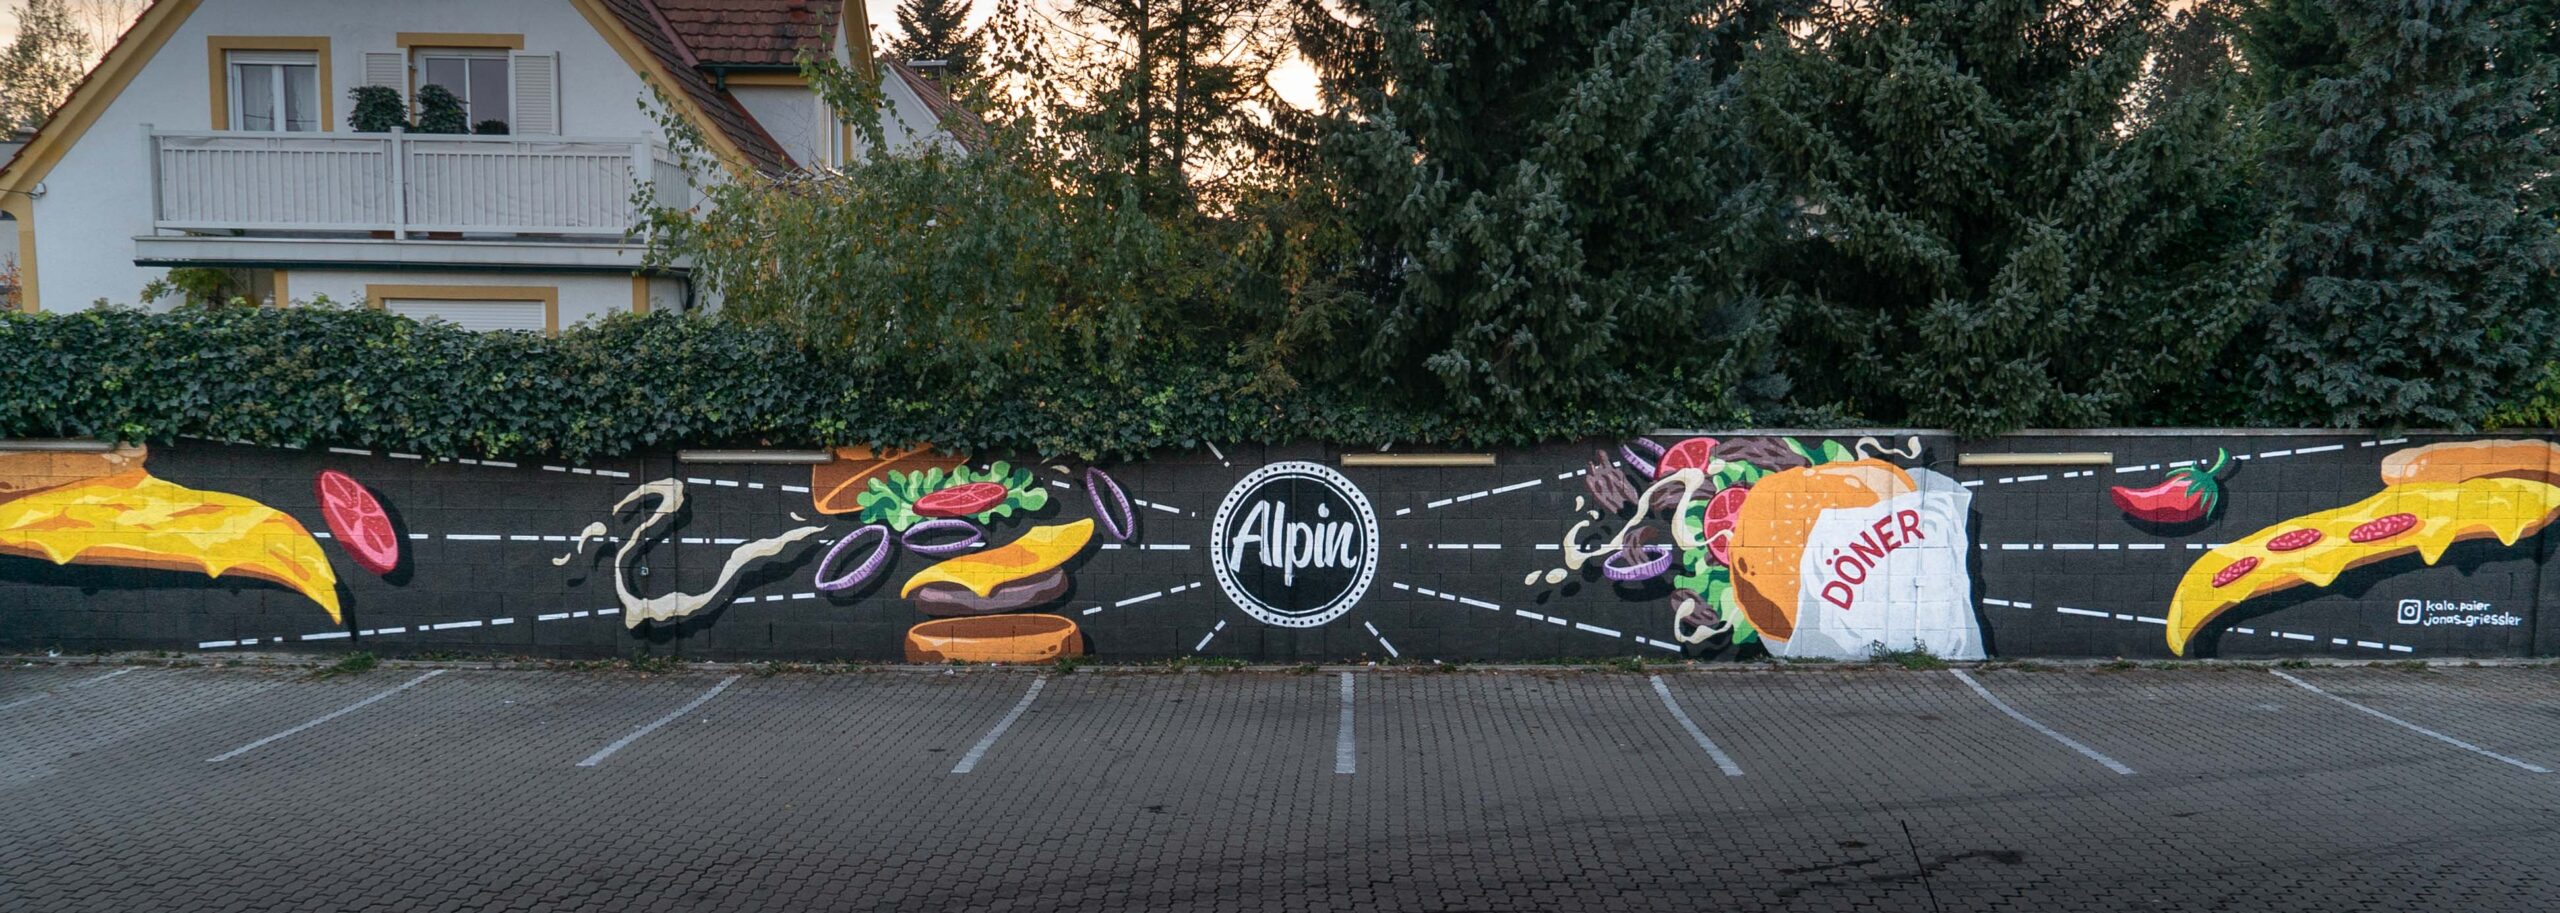 Alpin_Graffiti_Wall_5